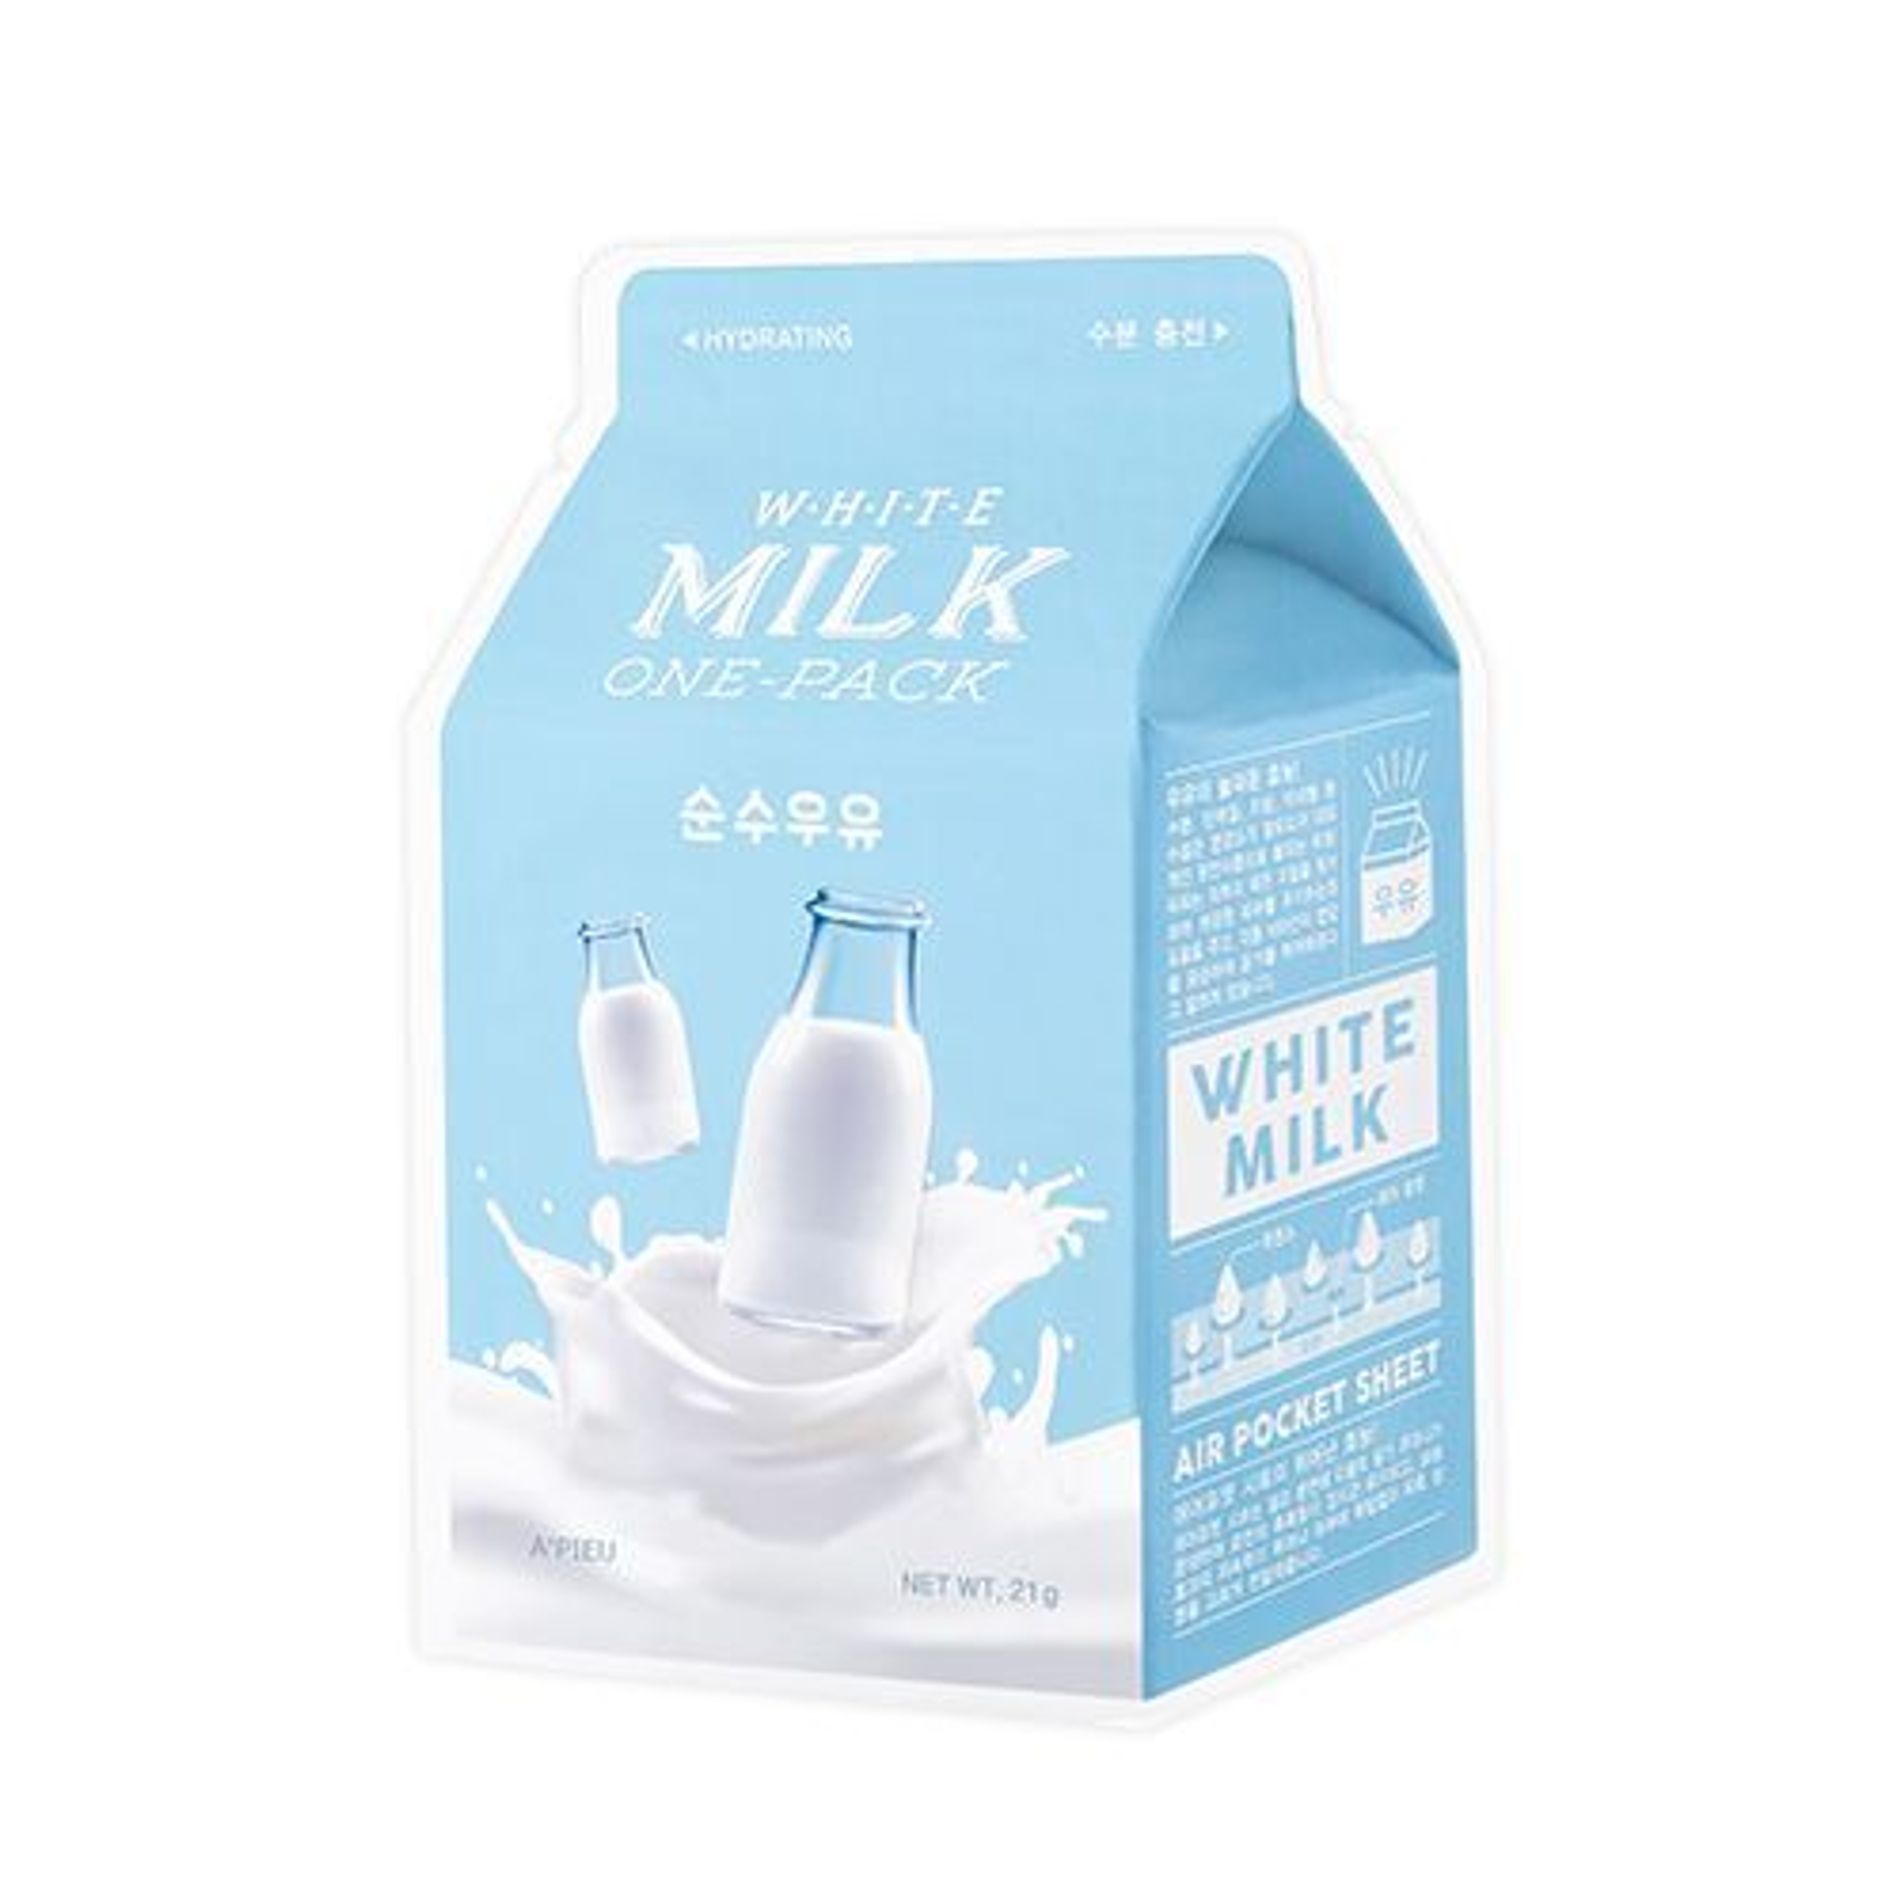 mat-na-giay-cap-am-a-pieu-white-milk-one-pack-3